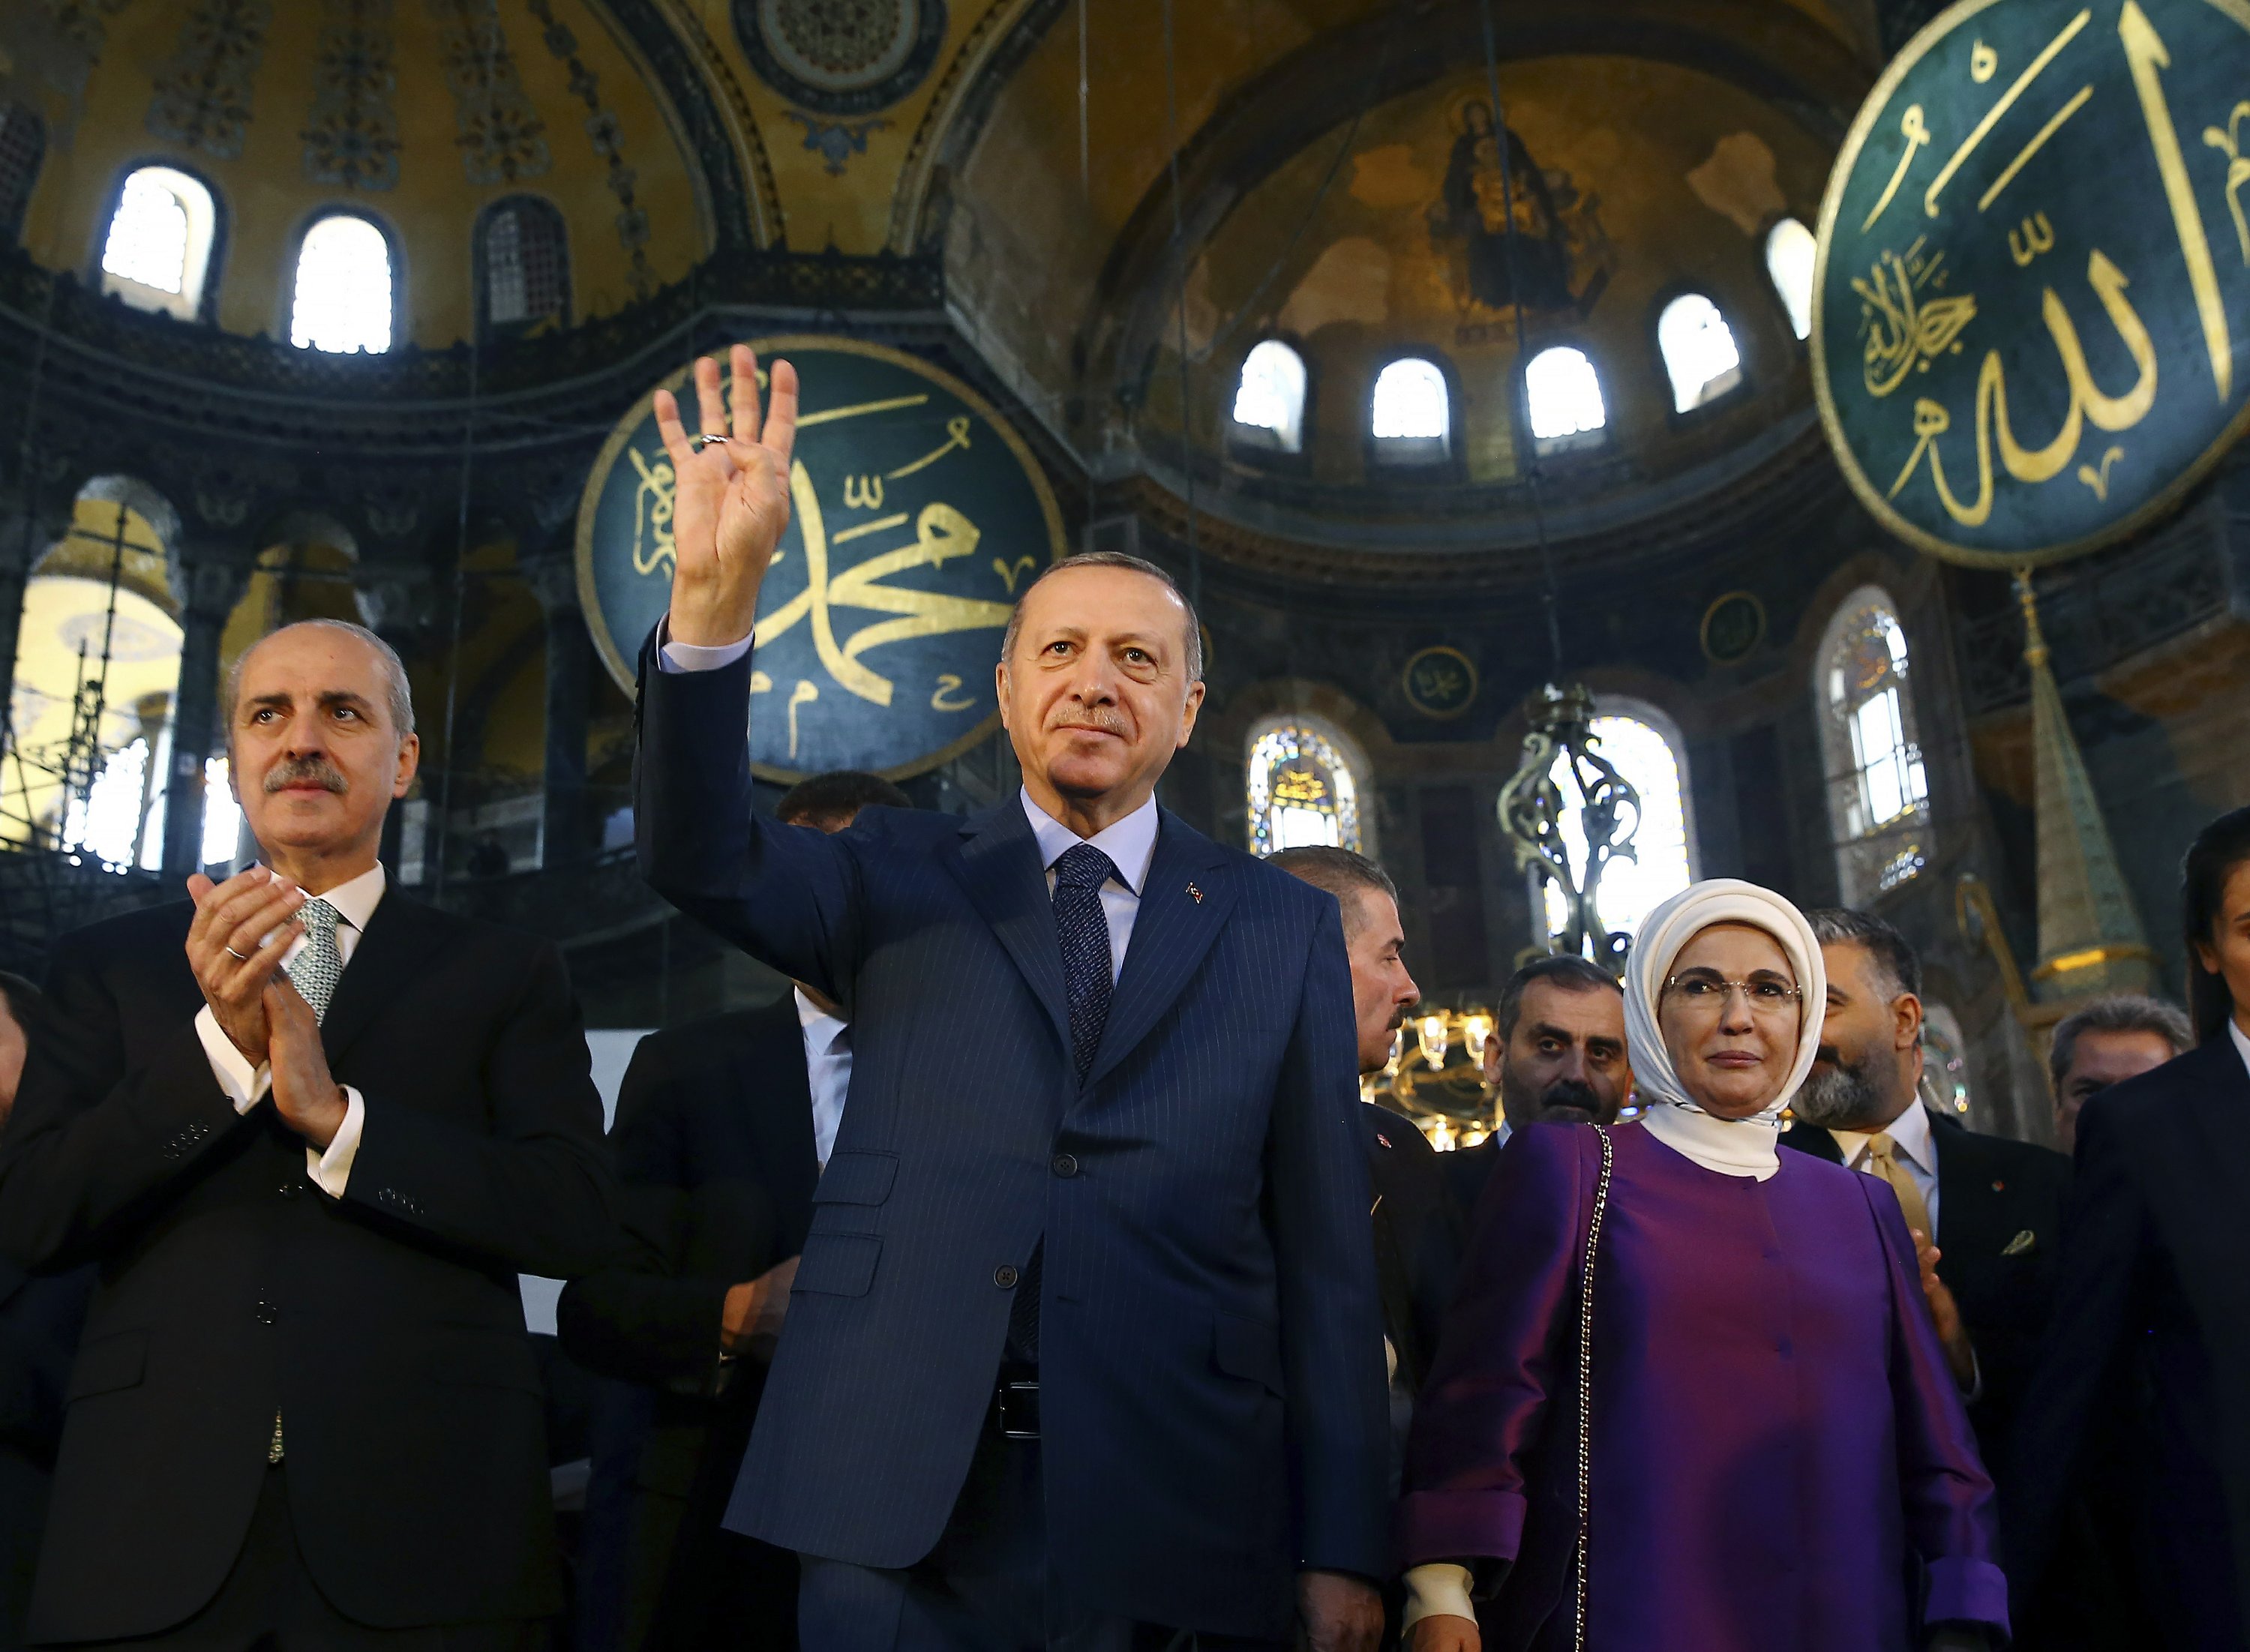 Turkish president recites Muslim prayer at the Hagia Sophia